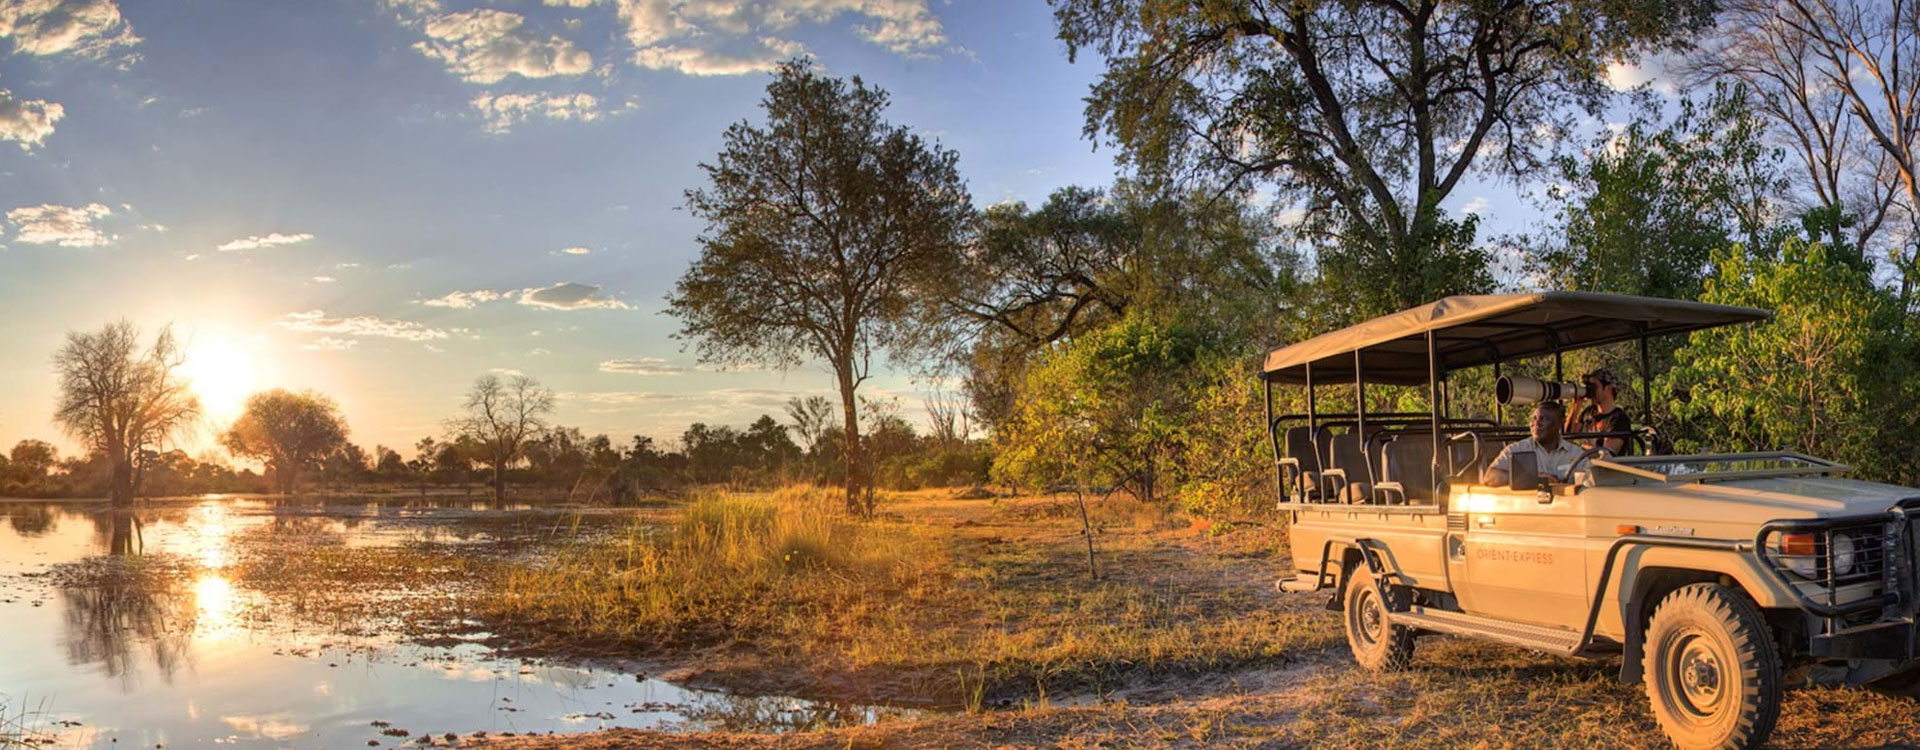 Botswana Self-drive SUV Safari